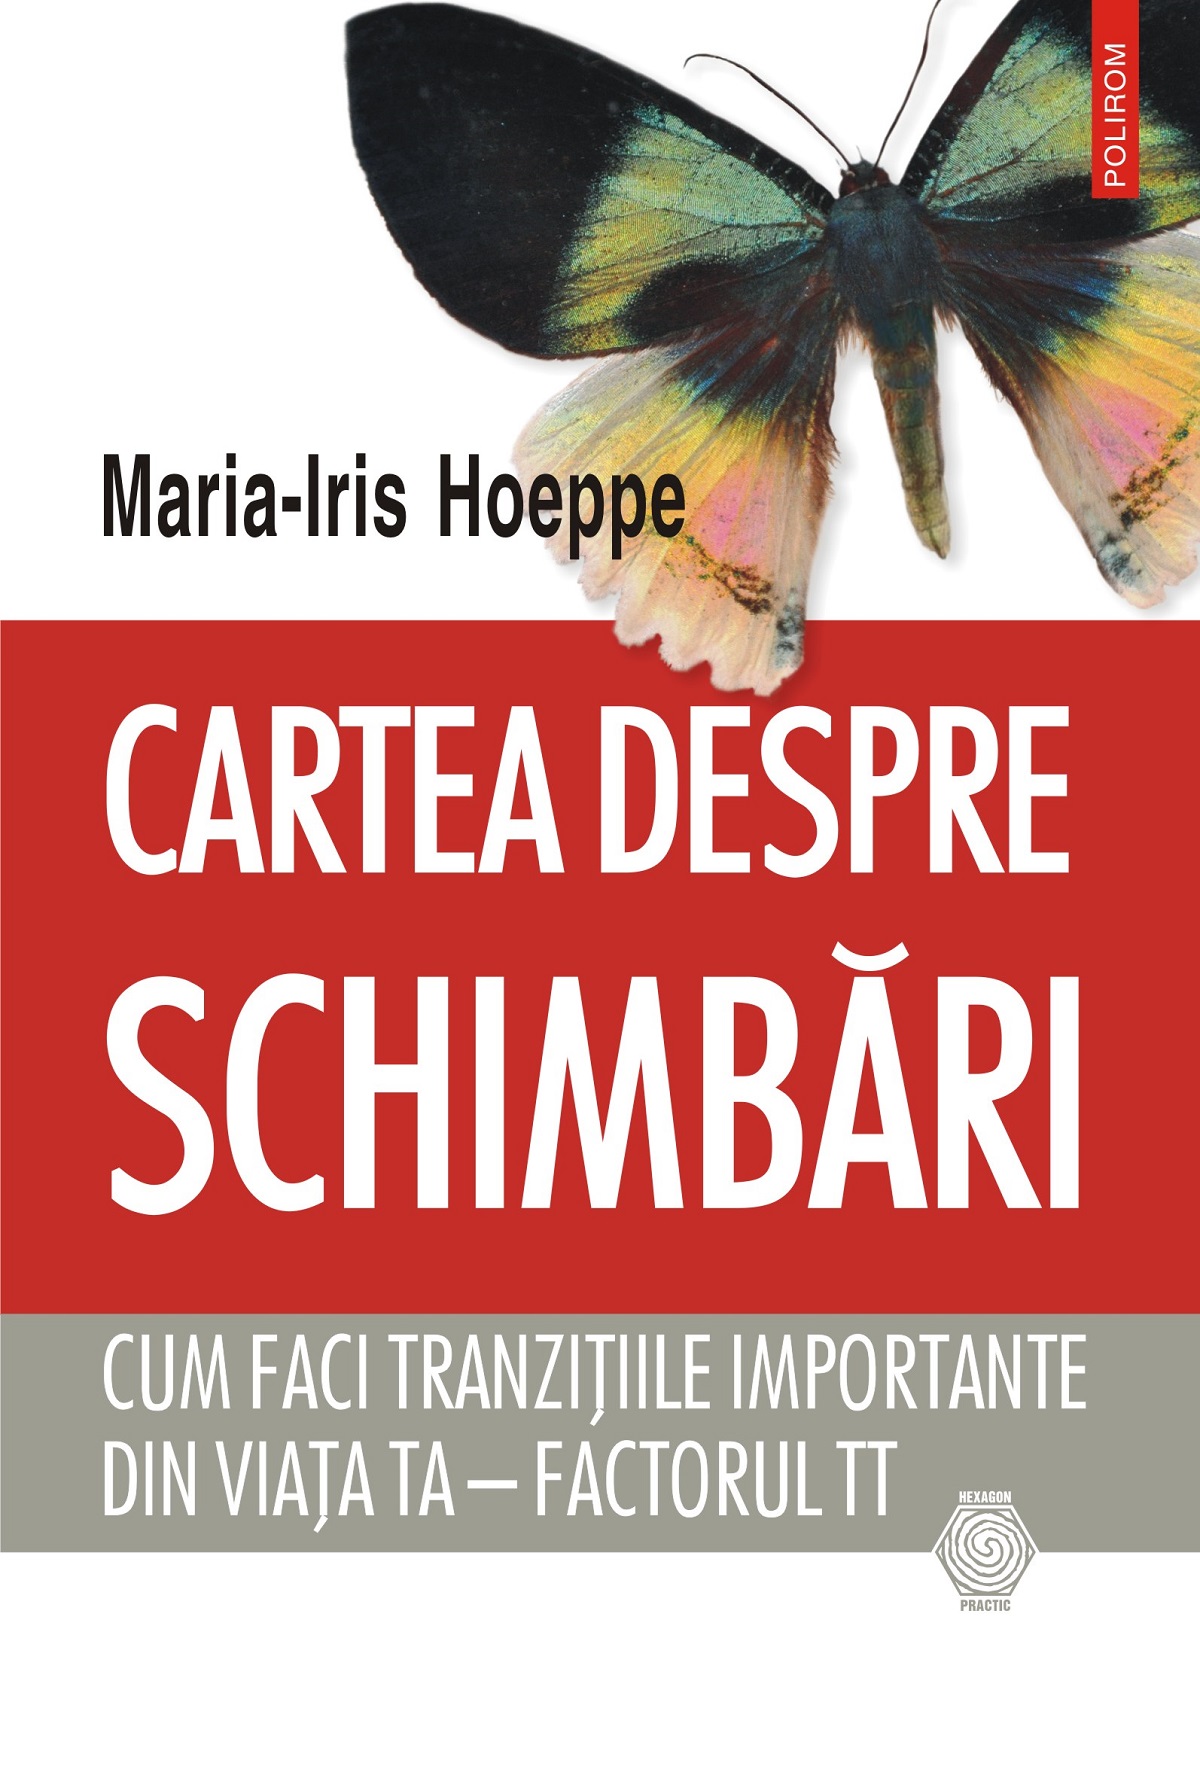 eBook Cartea despre schimbari cum faci tranzitiile importante din viata ta - factorul TT - Maria-Iris Hoeppe